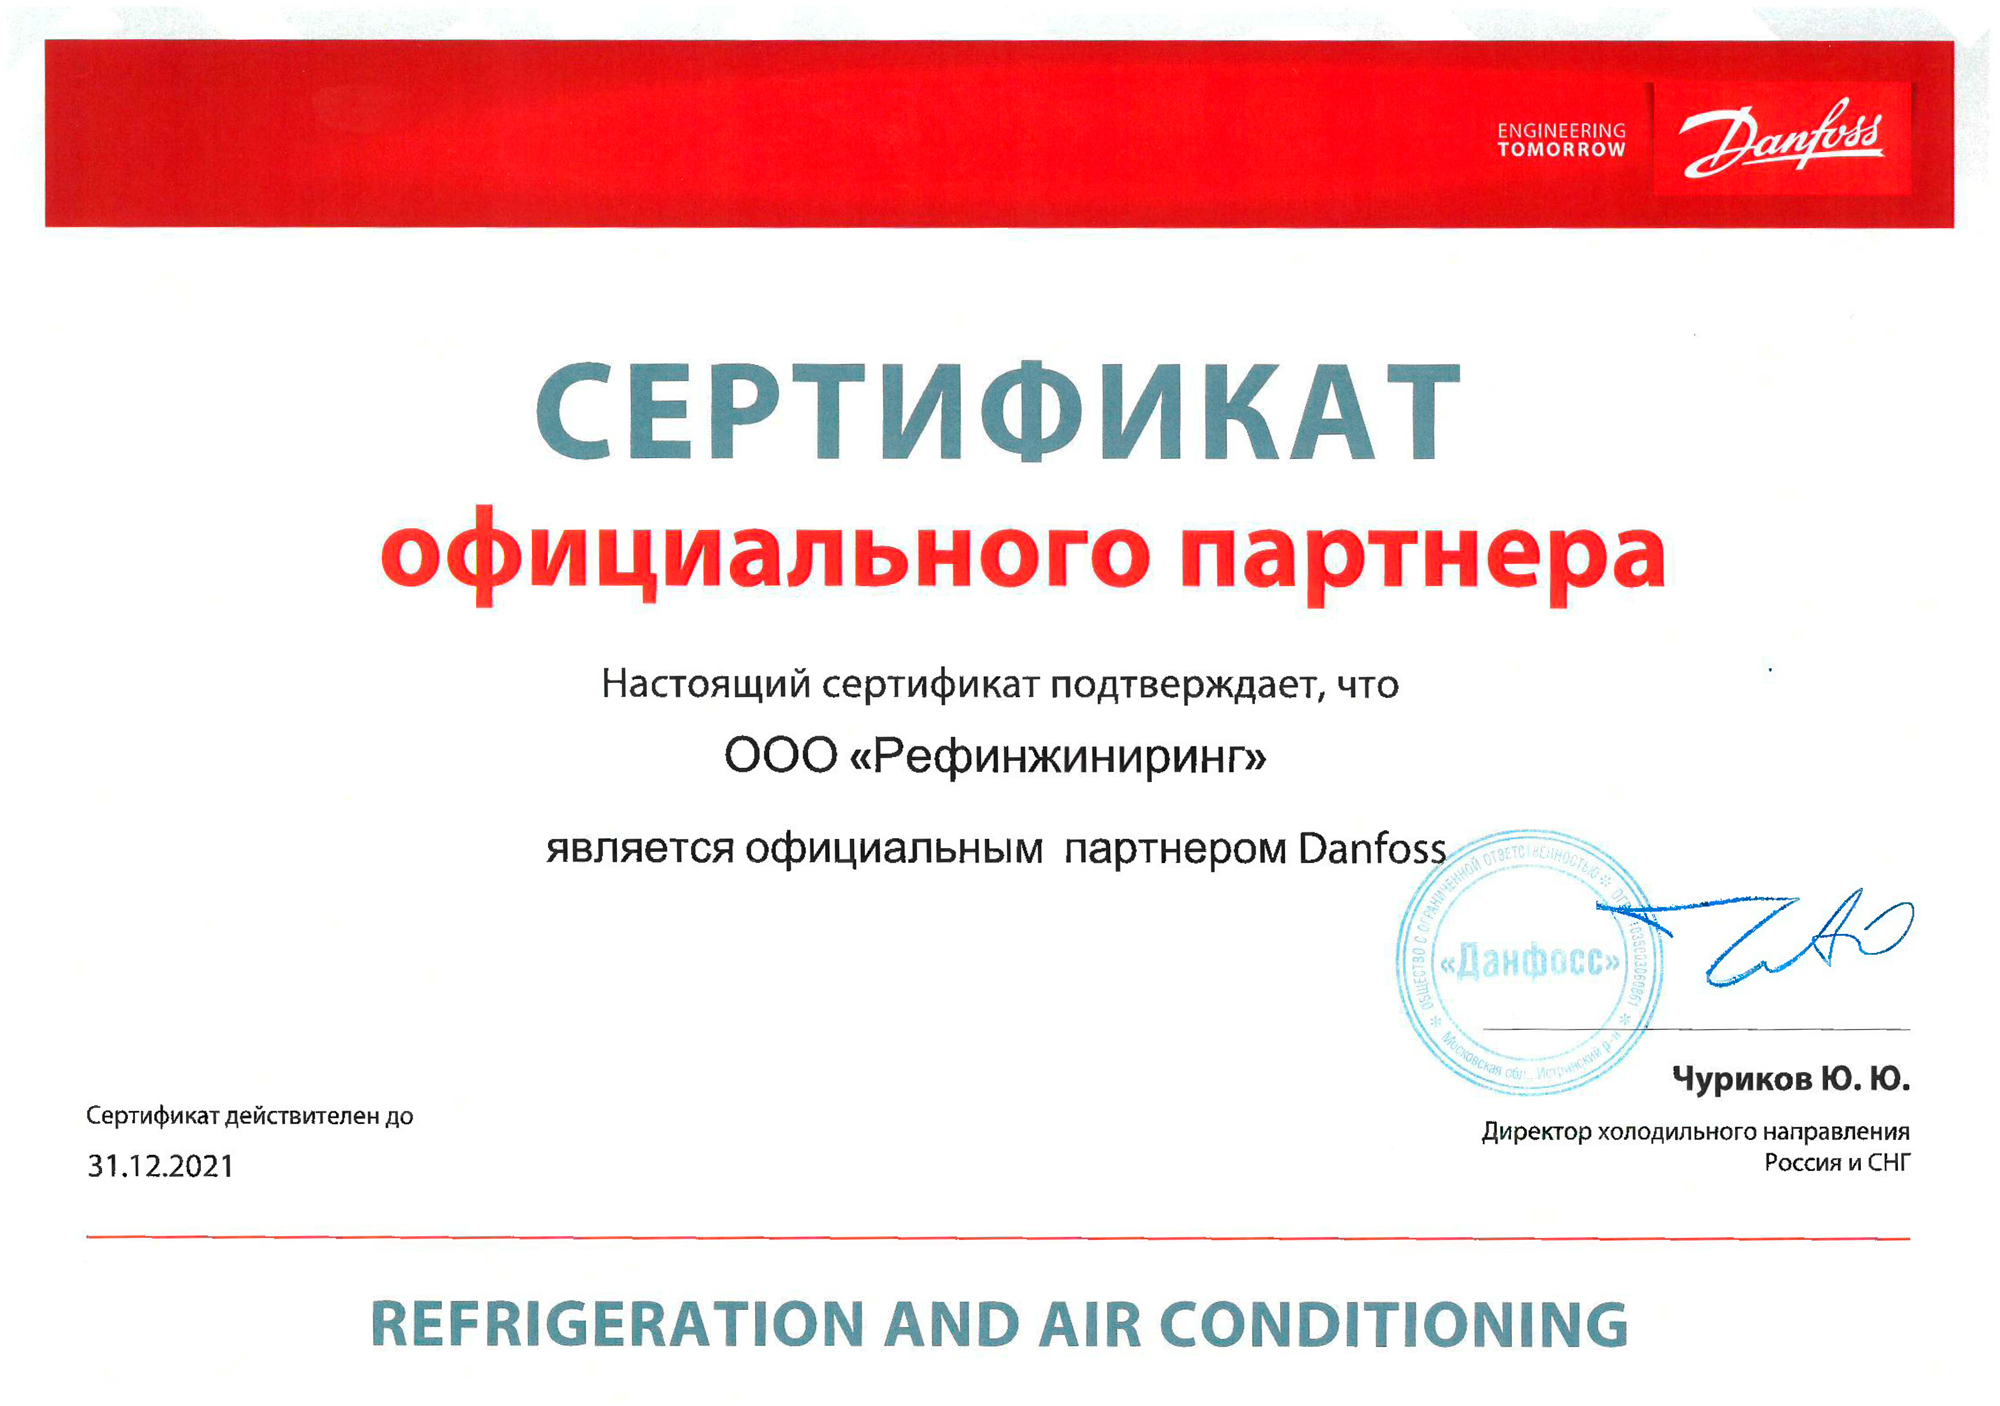 Сертификат о партнерстве компании Рефинжиниринг с Danfoss